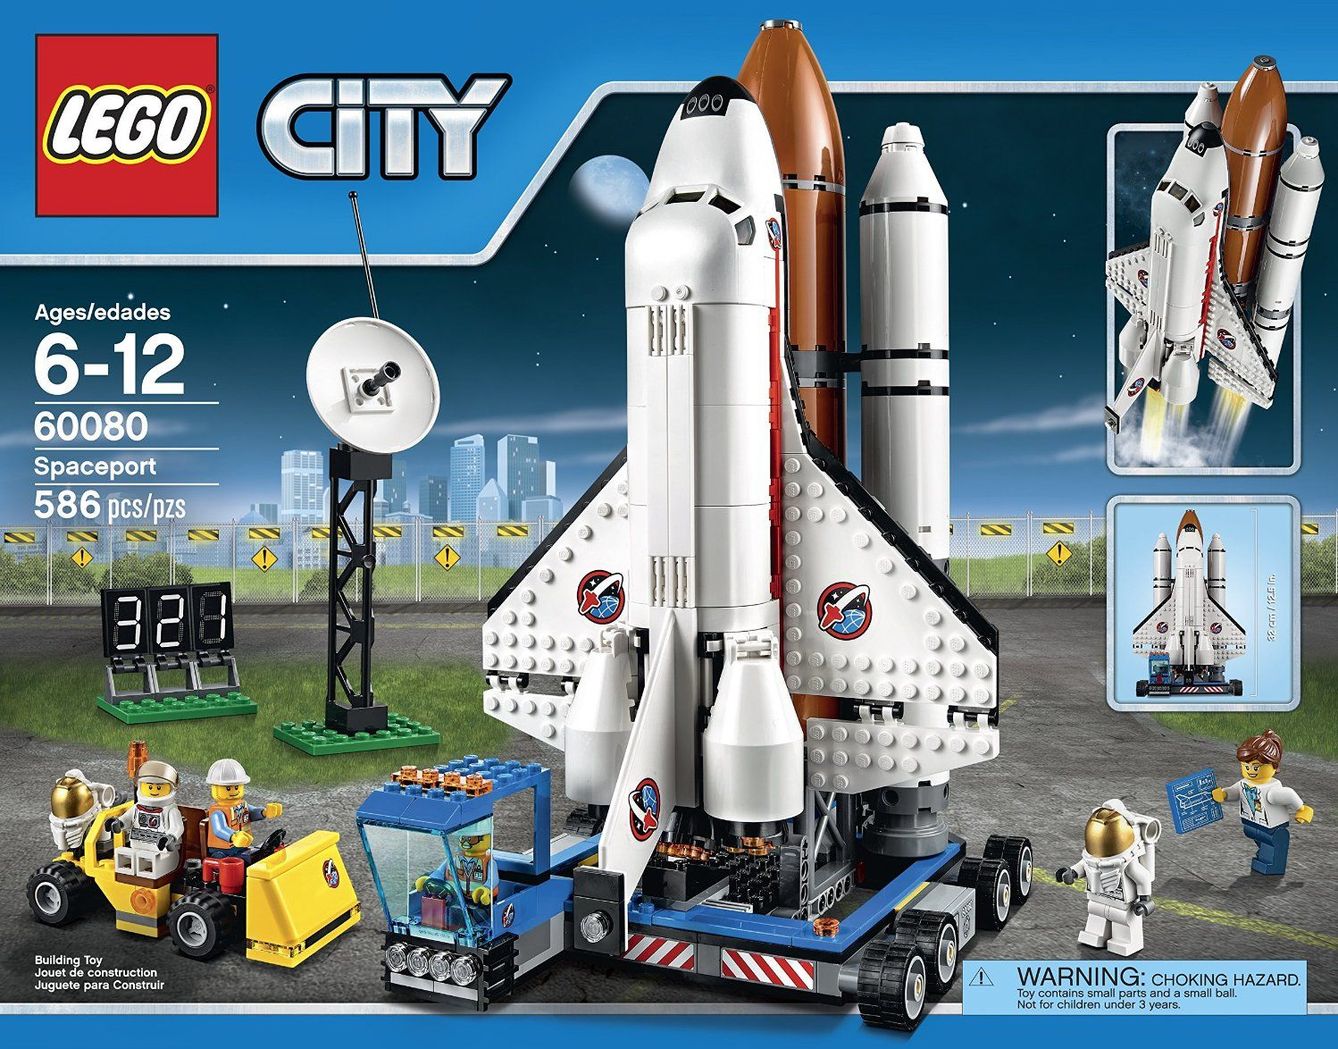 El Puerto Espacial de LEGO ha sido elegido por la Asociación Española de Fabricantes de Juguetes como el Juguete Estrella de 2015 en la categoría de Construcción. (LEGO)